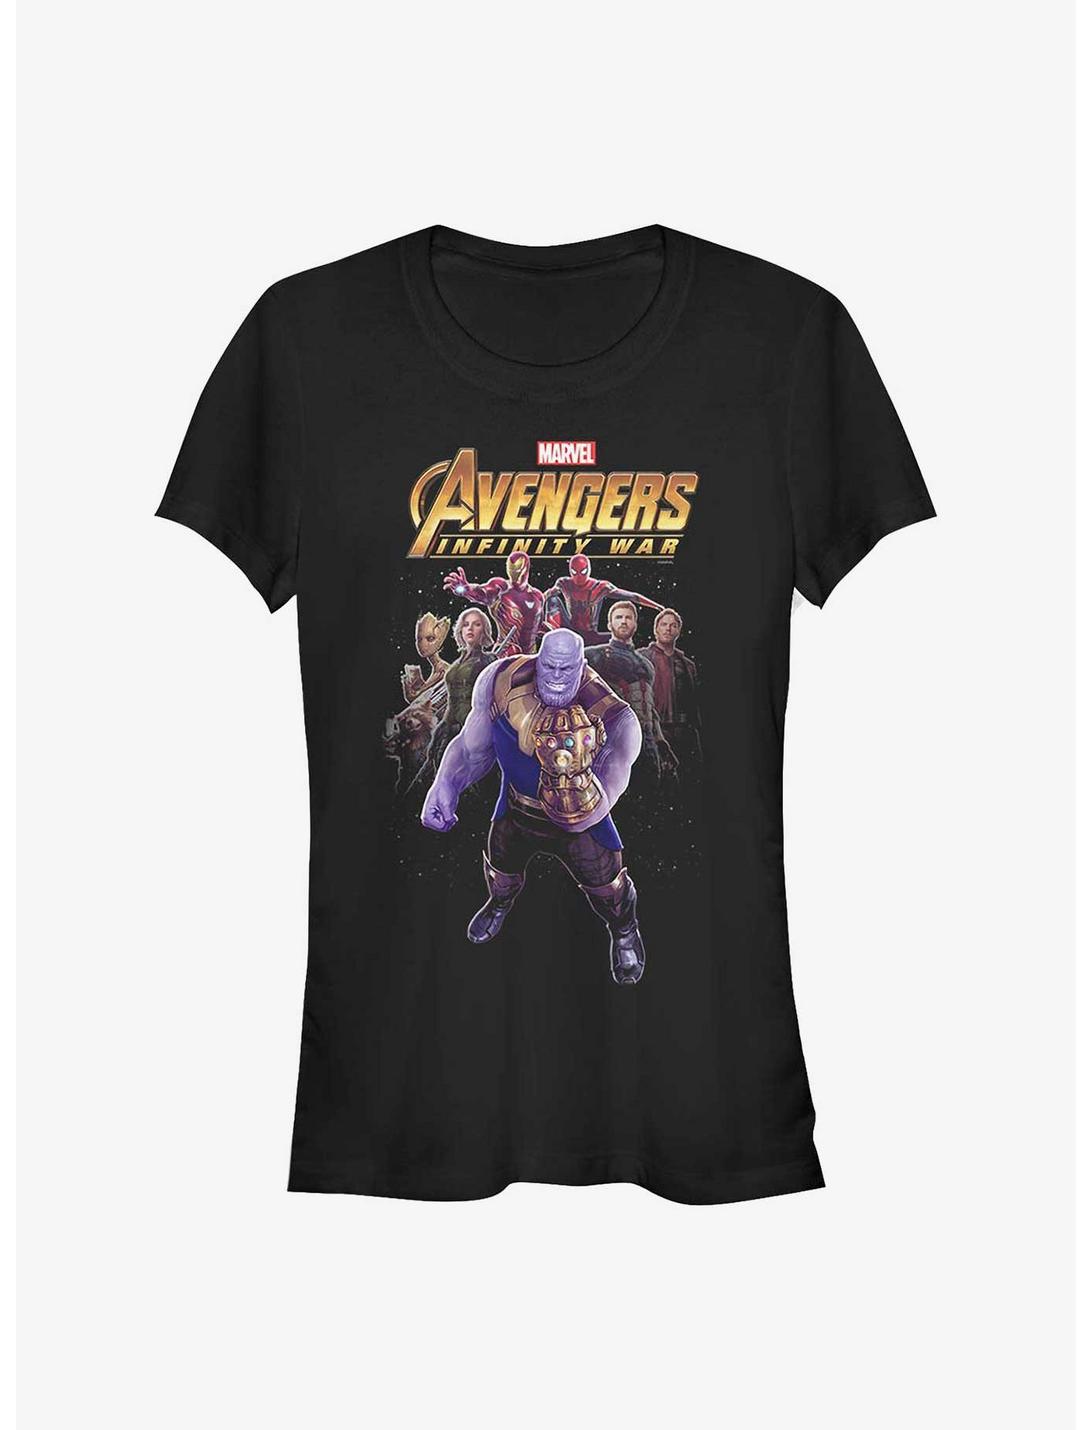 Marvel Avengers Heroes Vs Thanos Girls T-Shirt, BLACK, hi-res